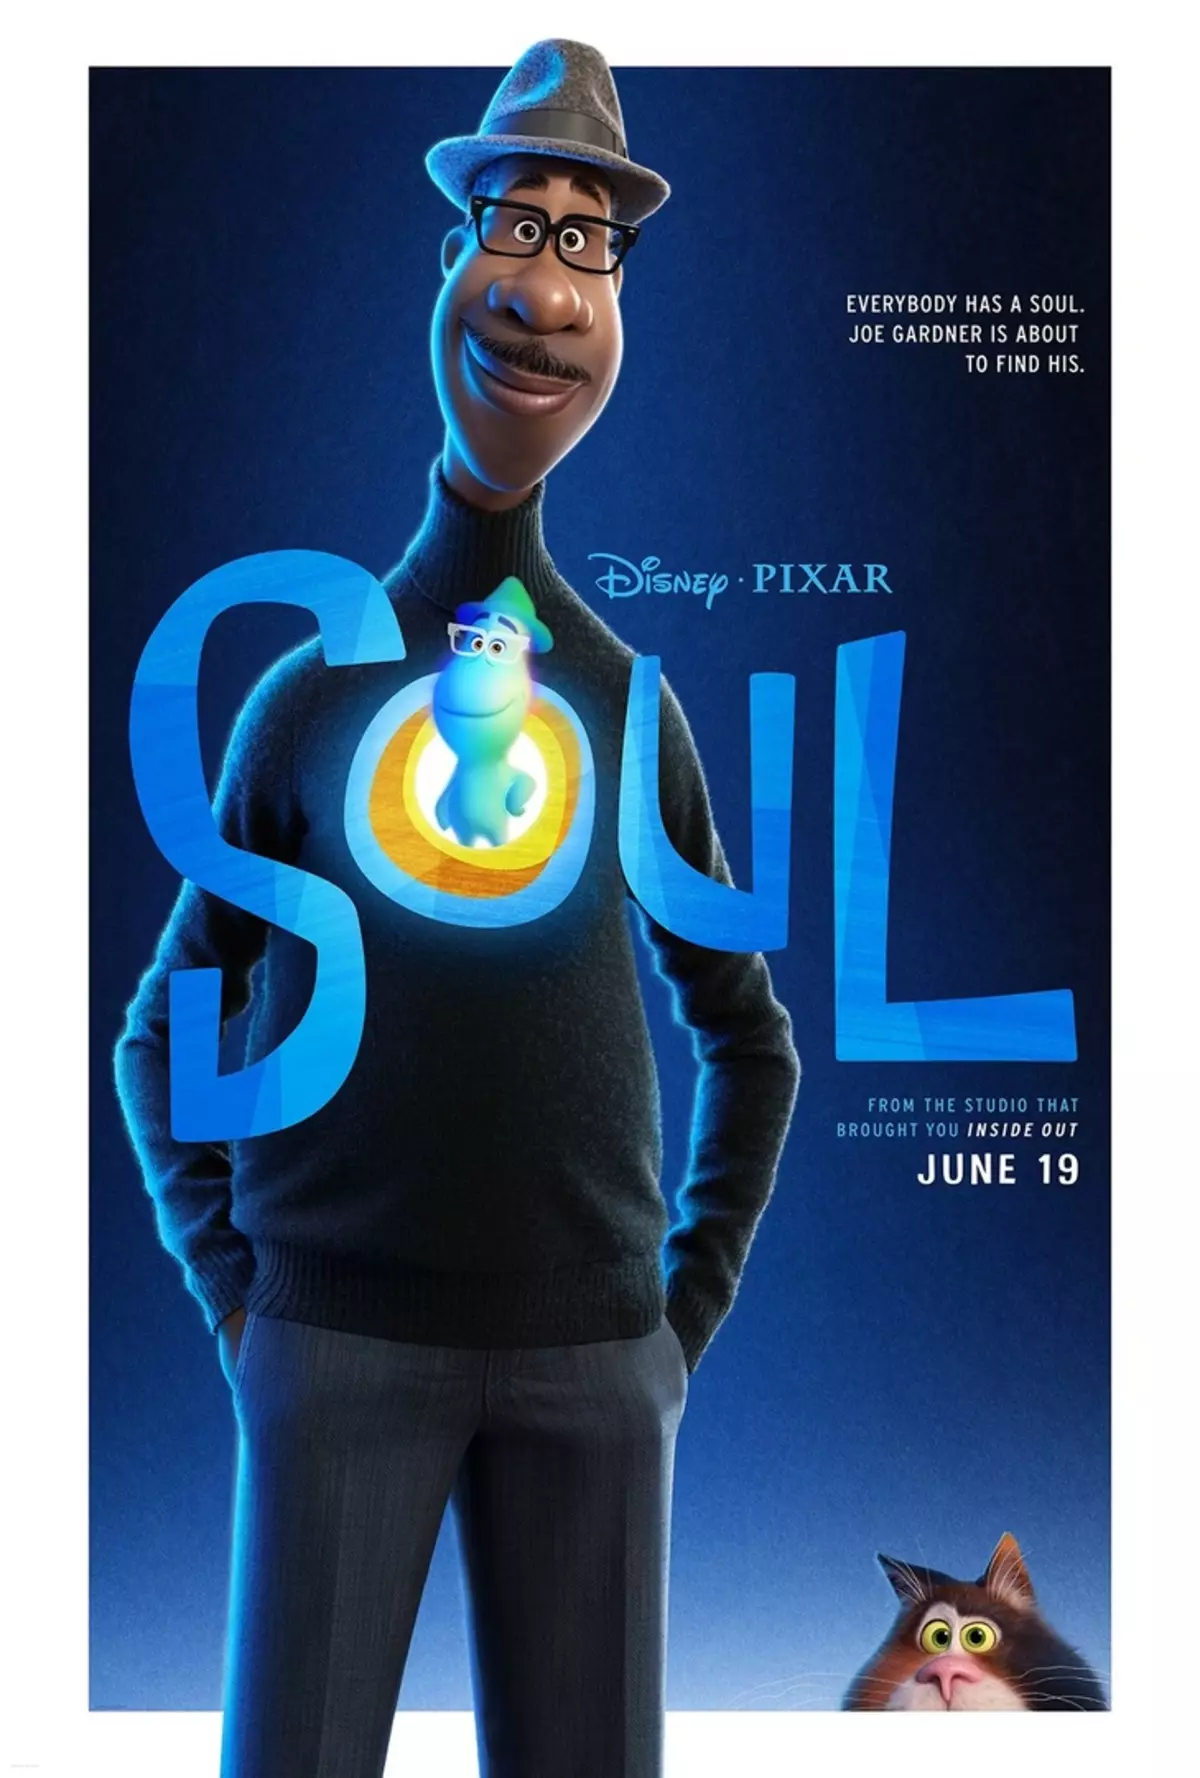 Studio Pixarが新しい漫画「魂」のためのトレーラーを発表 28825_1